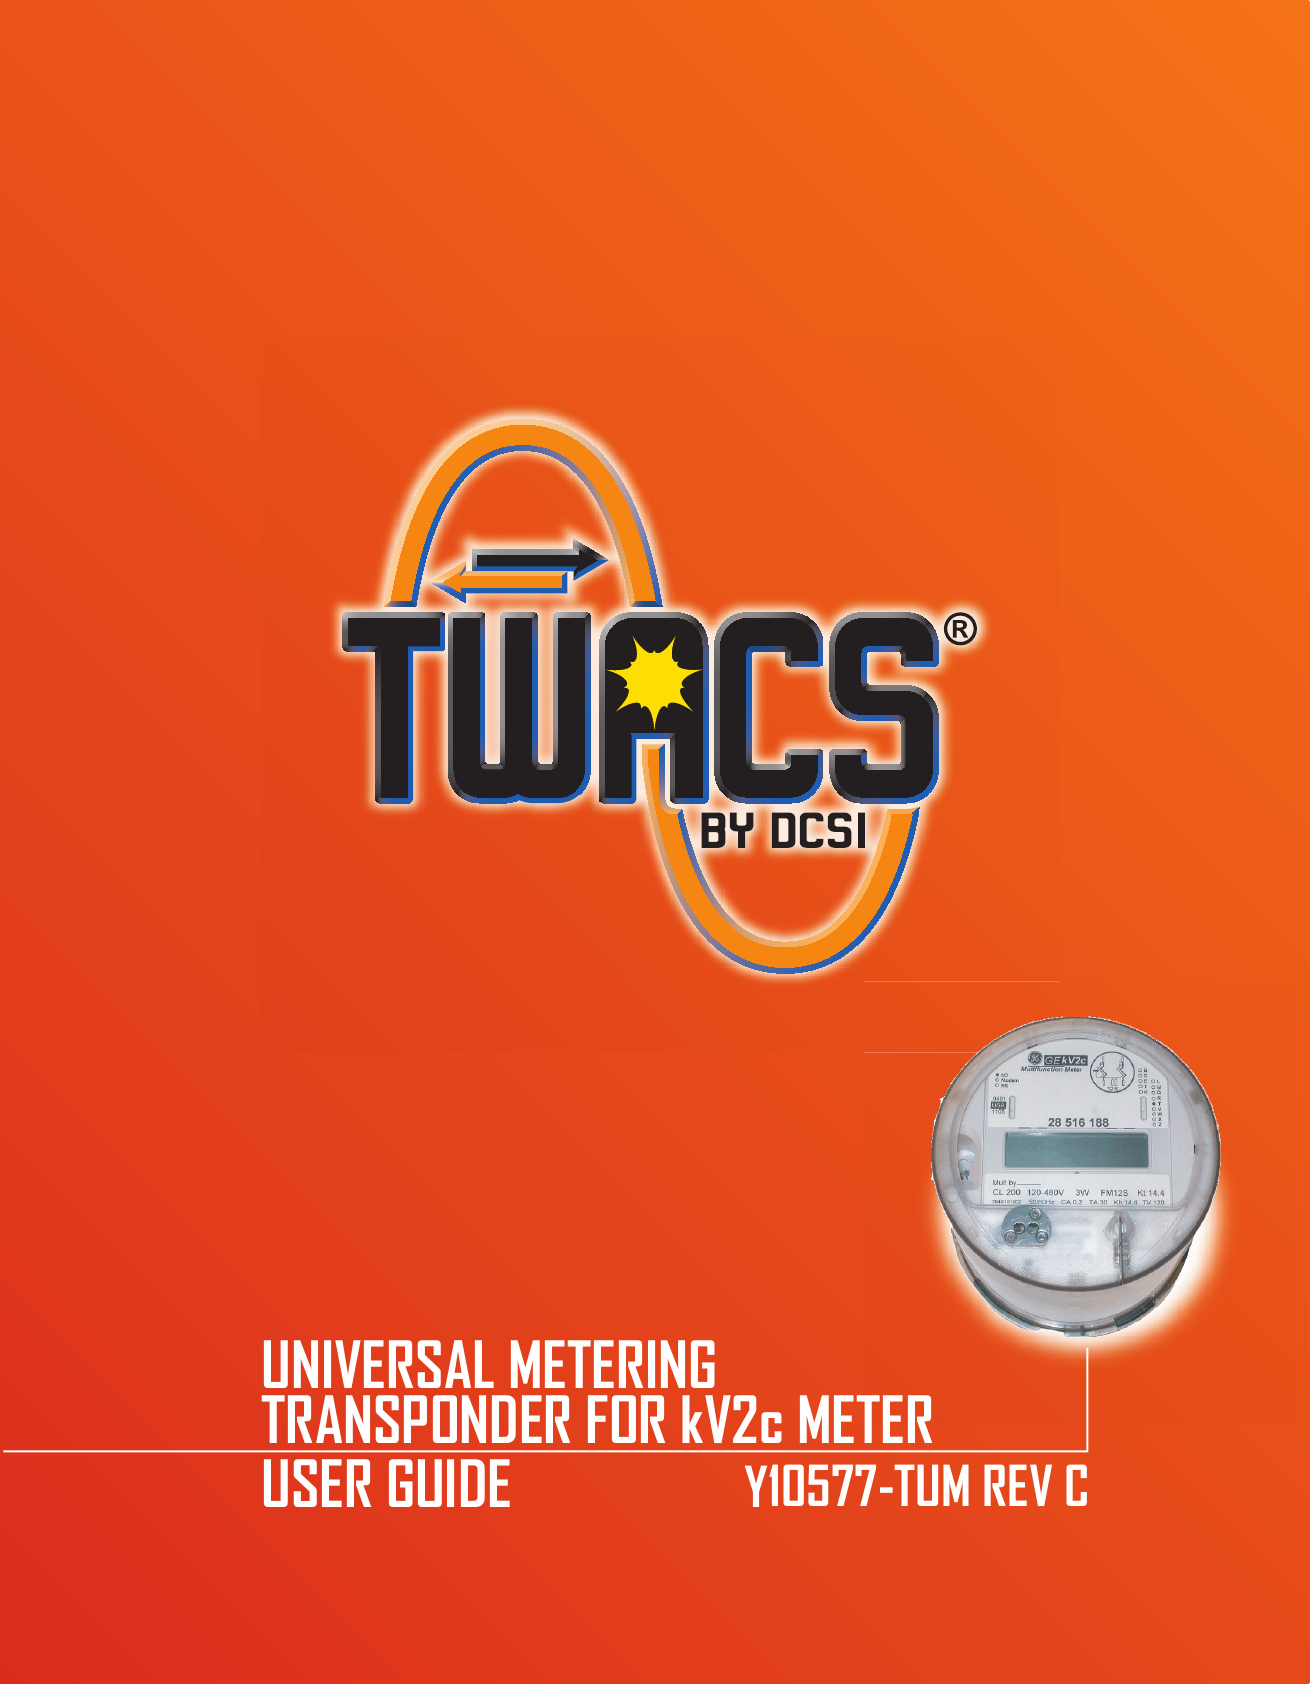 UNIVERSAL METERINGTRANSPONDER FOR kV2c METERUSER GUIDE                   Y10577-TUM REV C